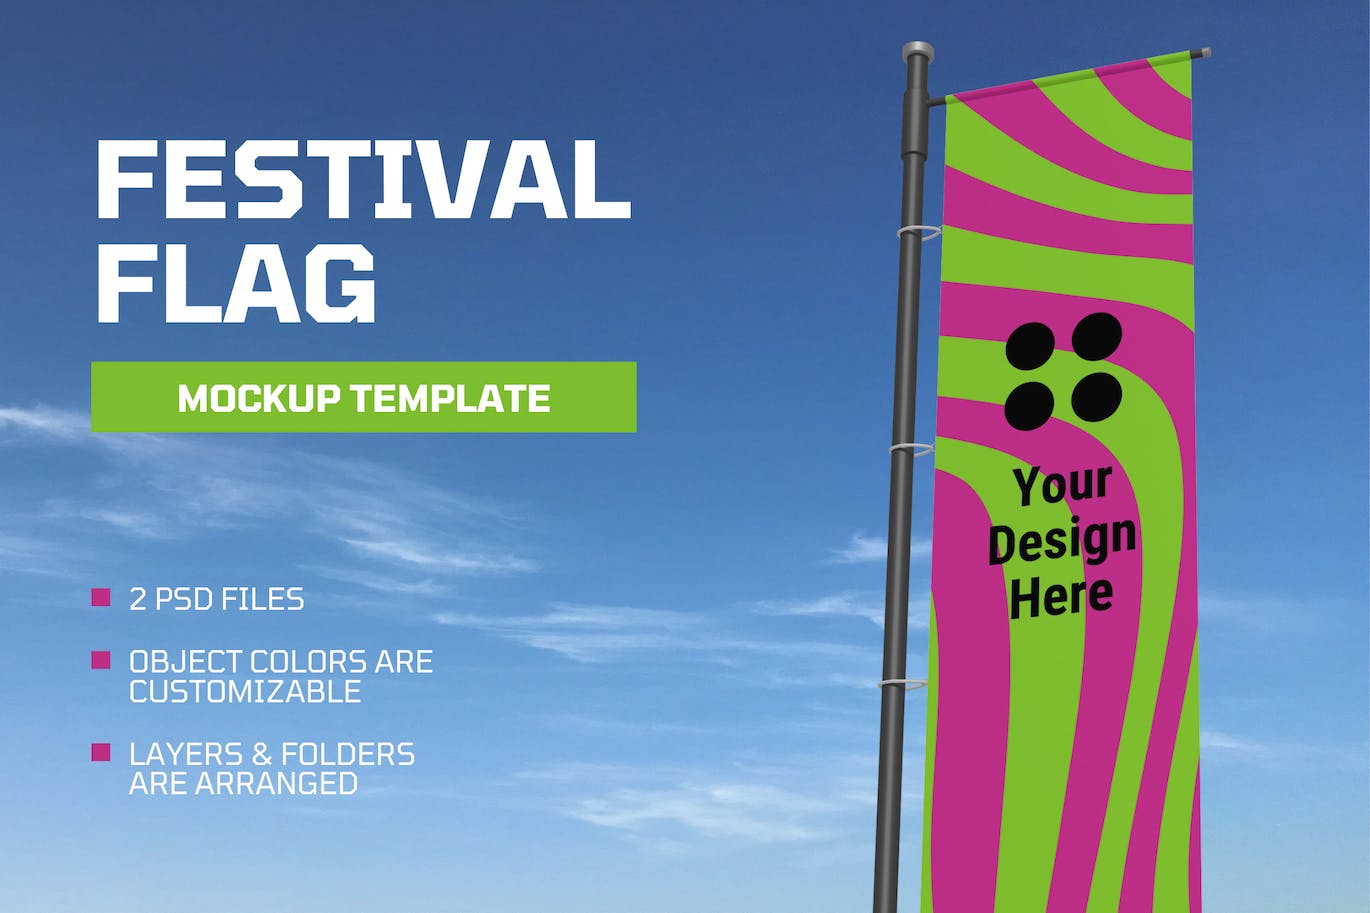 活动和节日旗帜设计样机图 Event & Festival Flag Mockup 样机素材 第1张